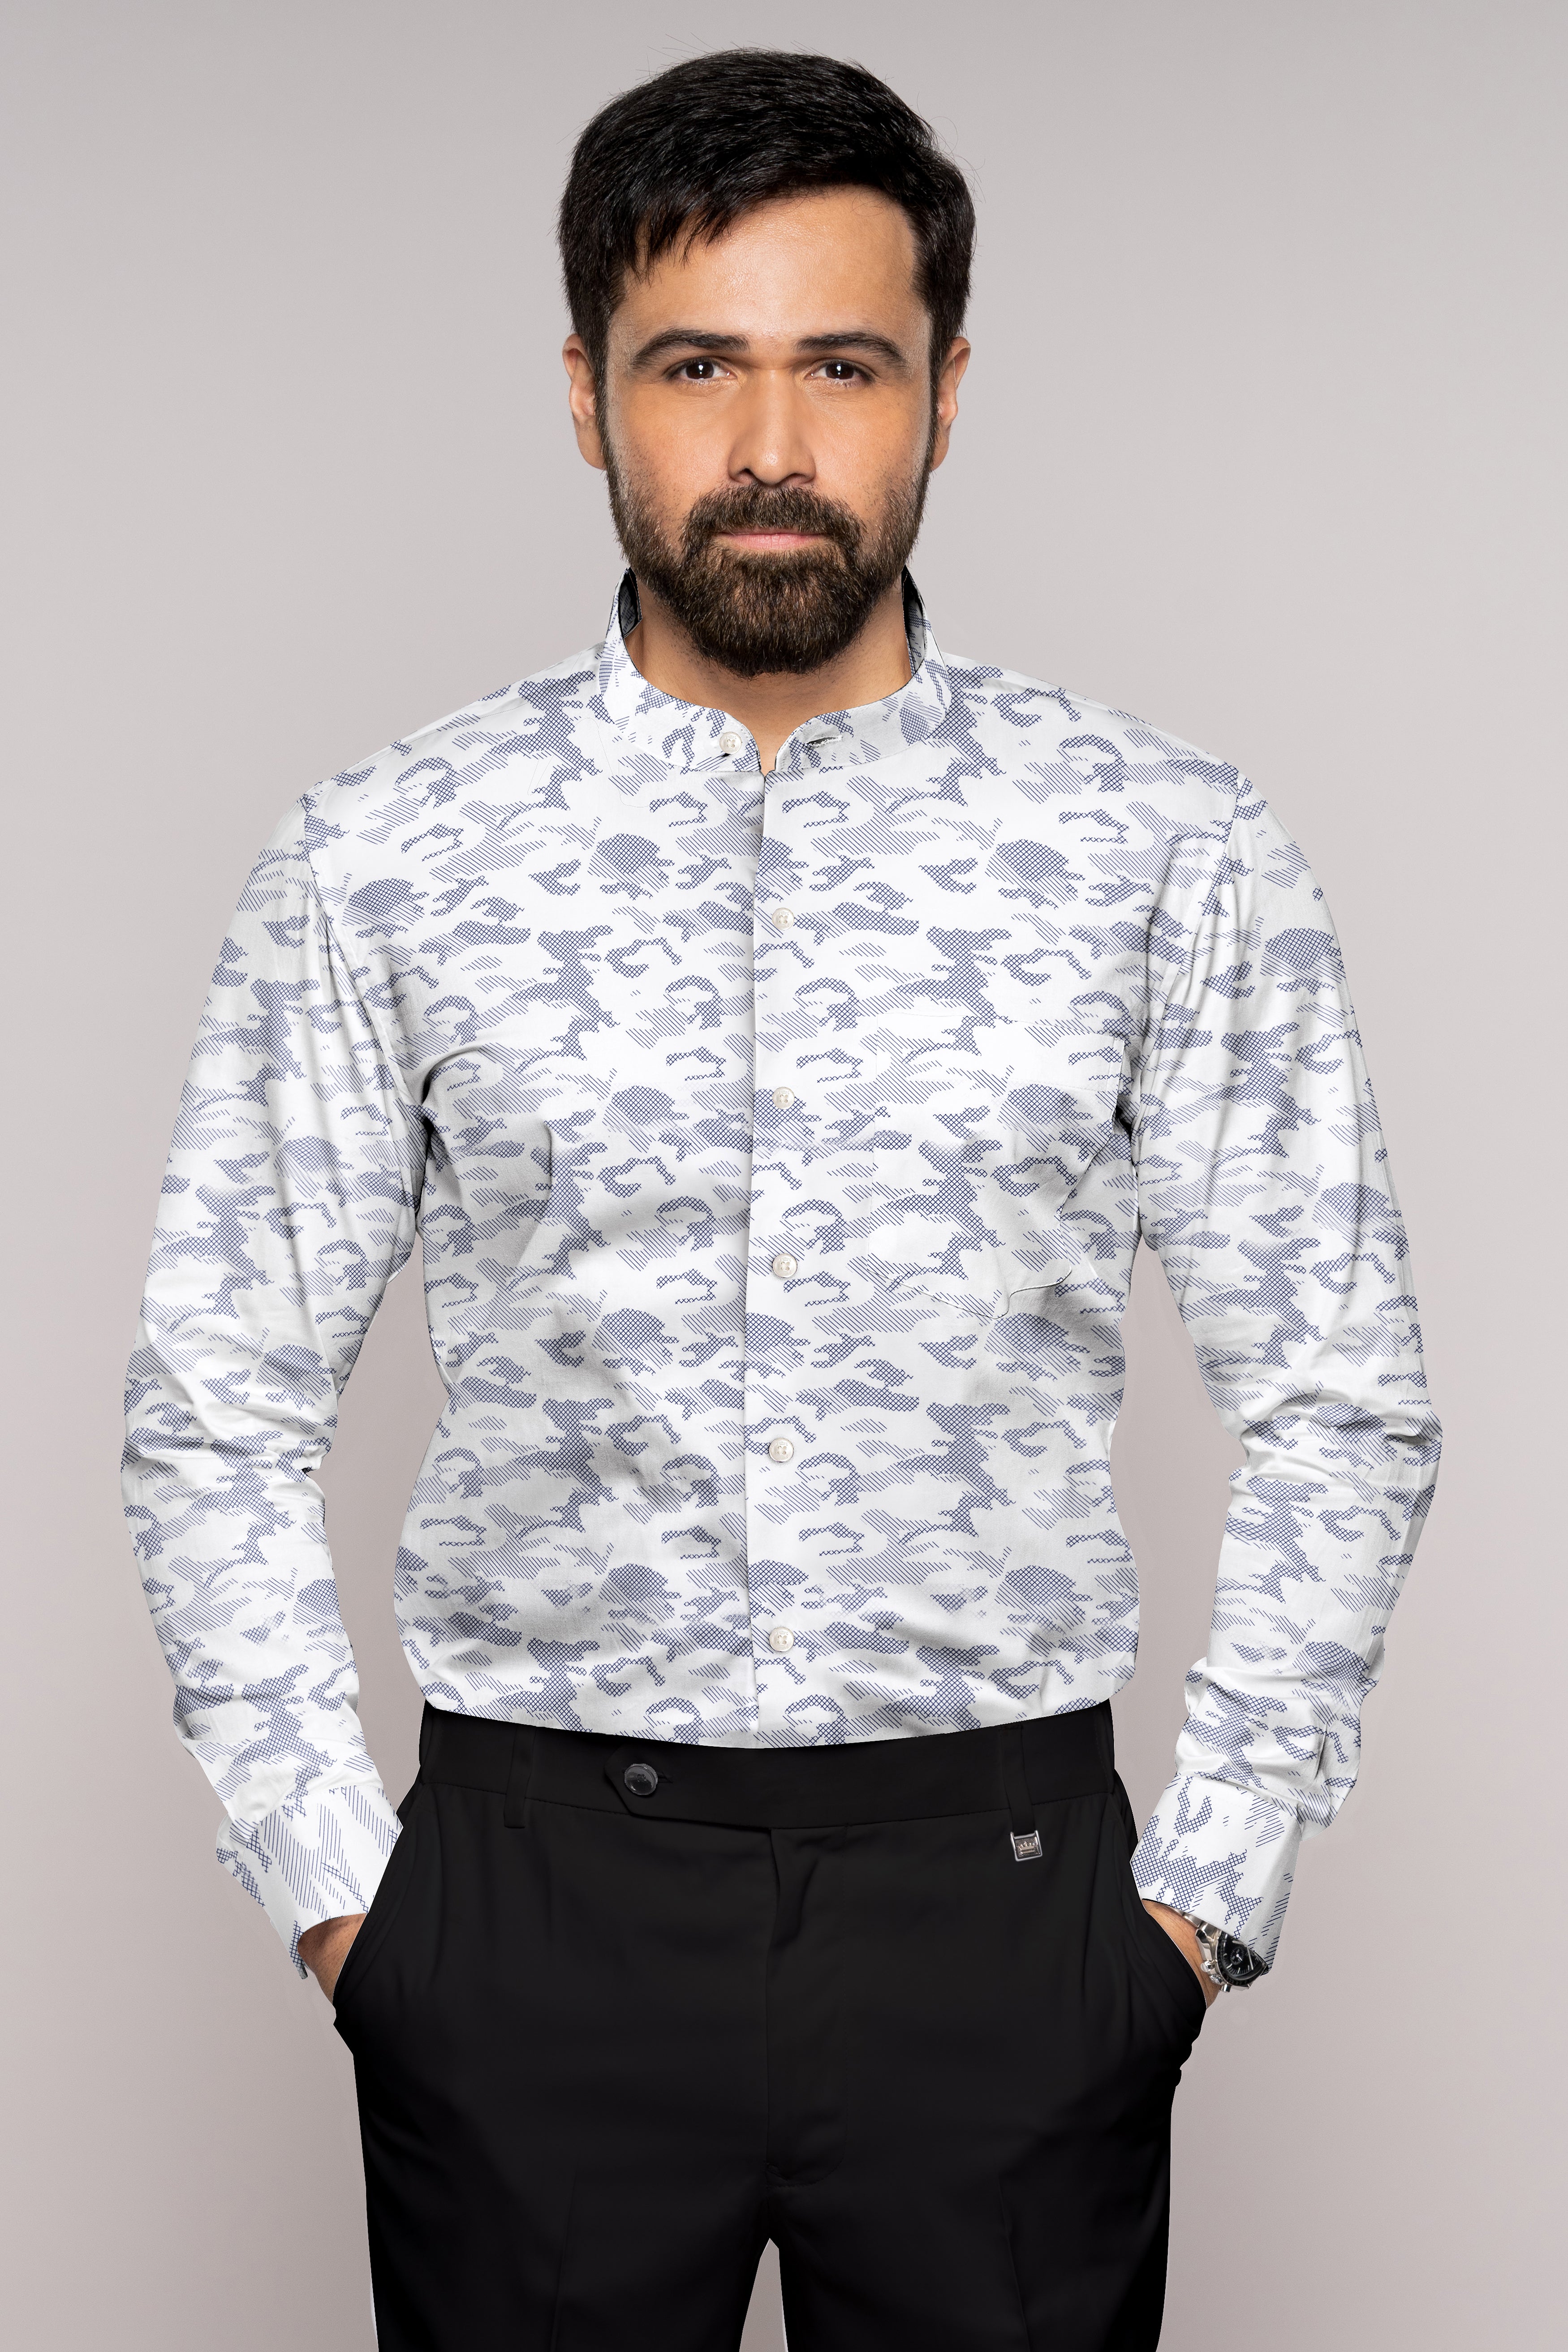 Bright White with Haiti Navy Blue Stitched Design Super Soft Premium Cotton Shirt